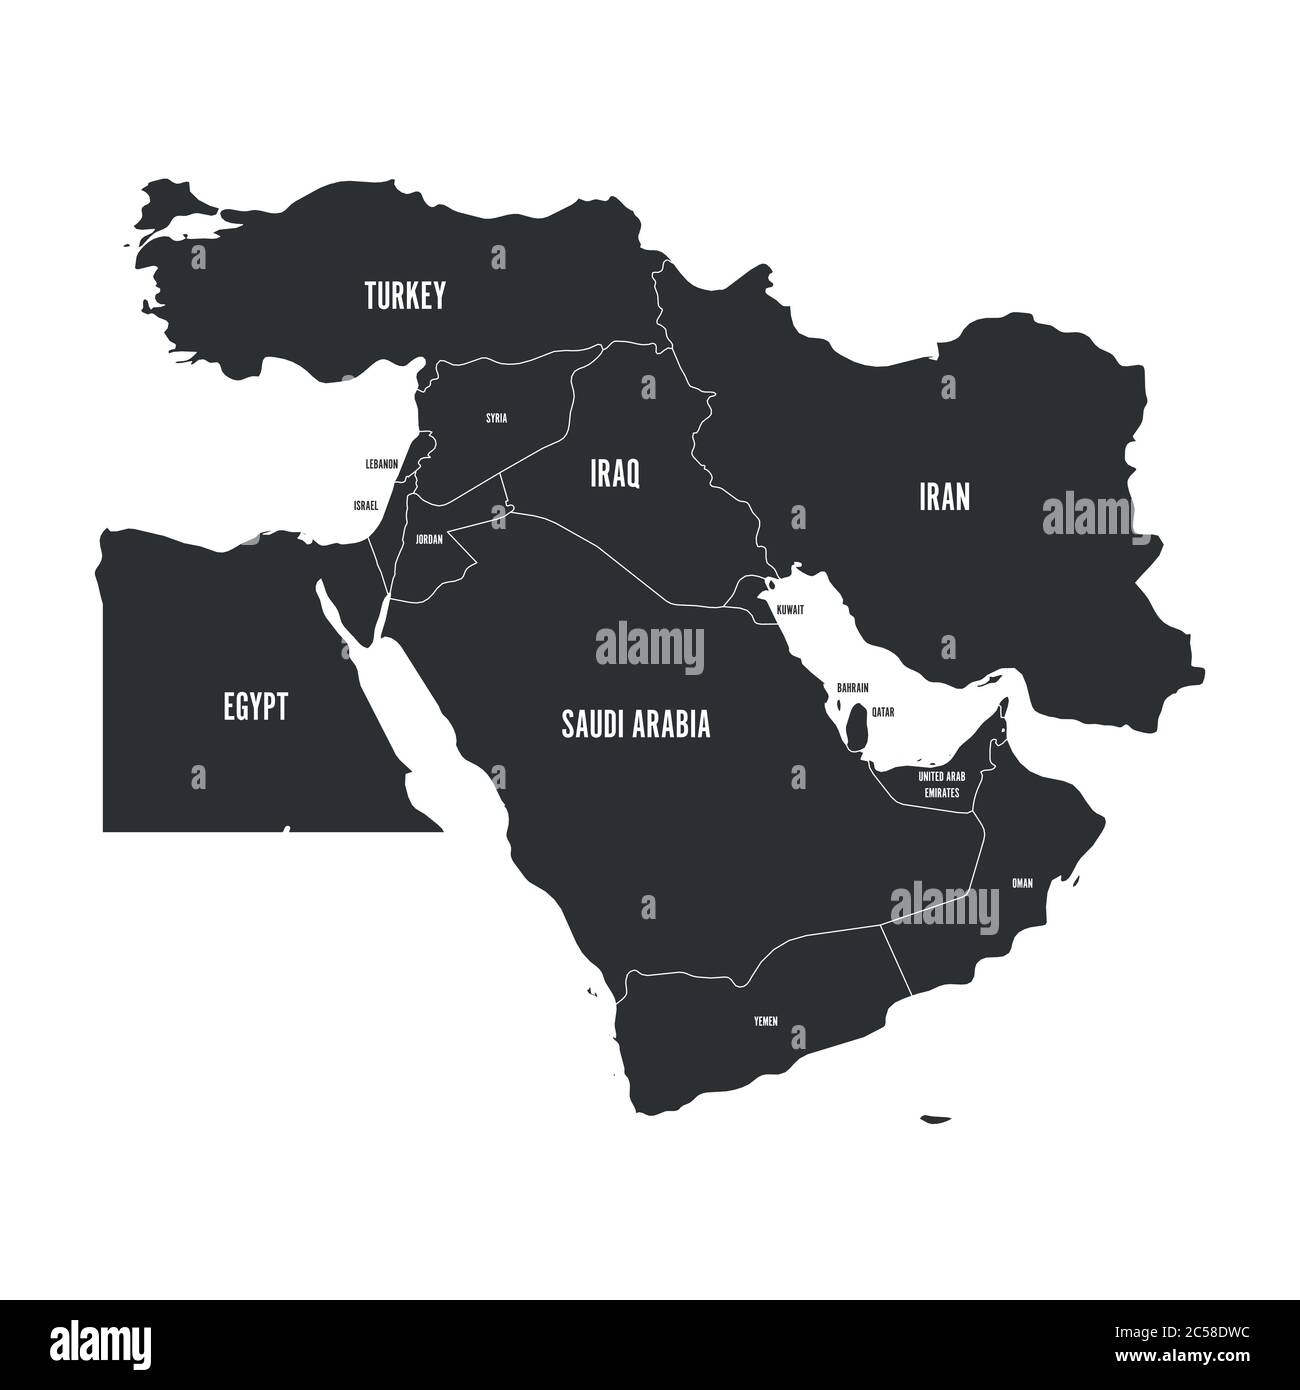 Mappa politica del Medio Oriente, o del Vicino Oriente, in grigio. Semplice immagine vettoriale piatta. Illustrazione Vettoriale